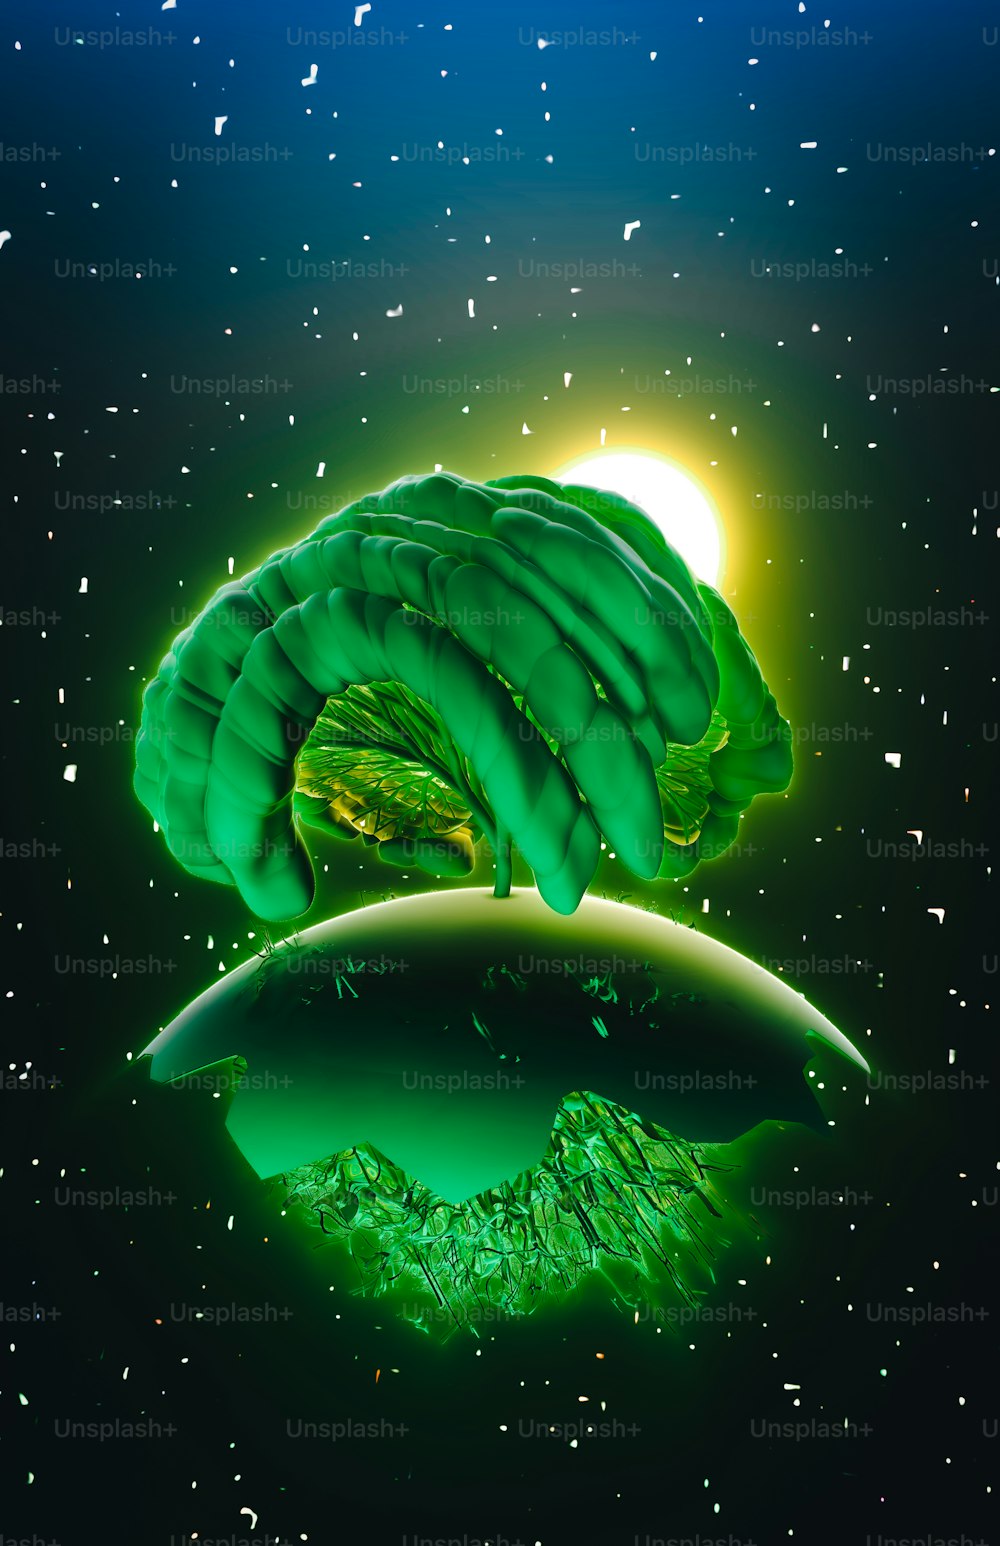 une image d’un objet vert flottant dans les airs